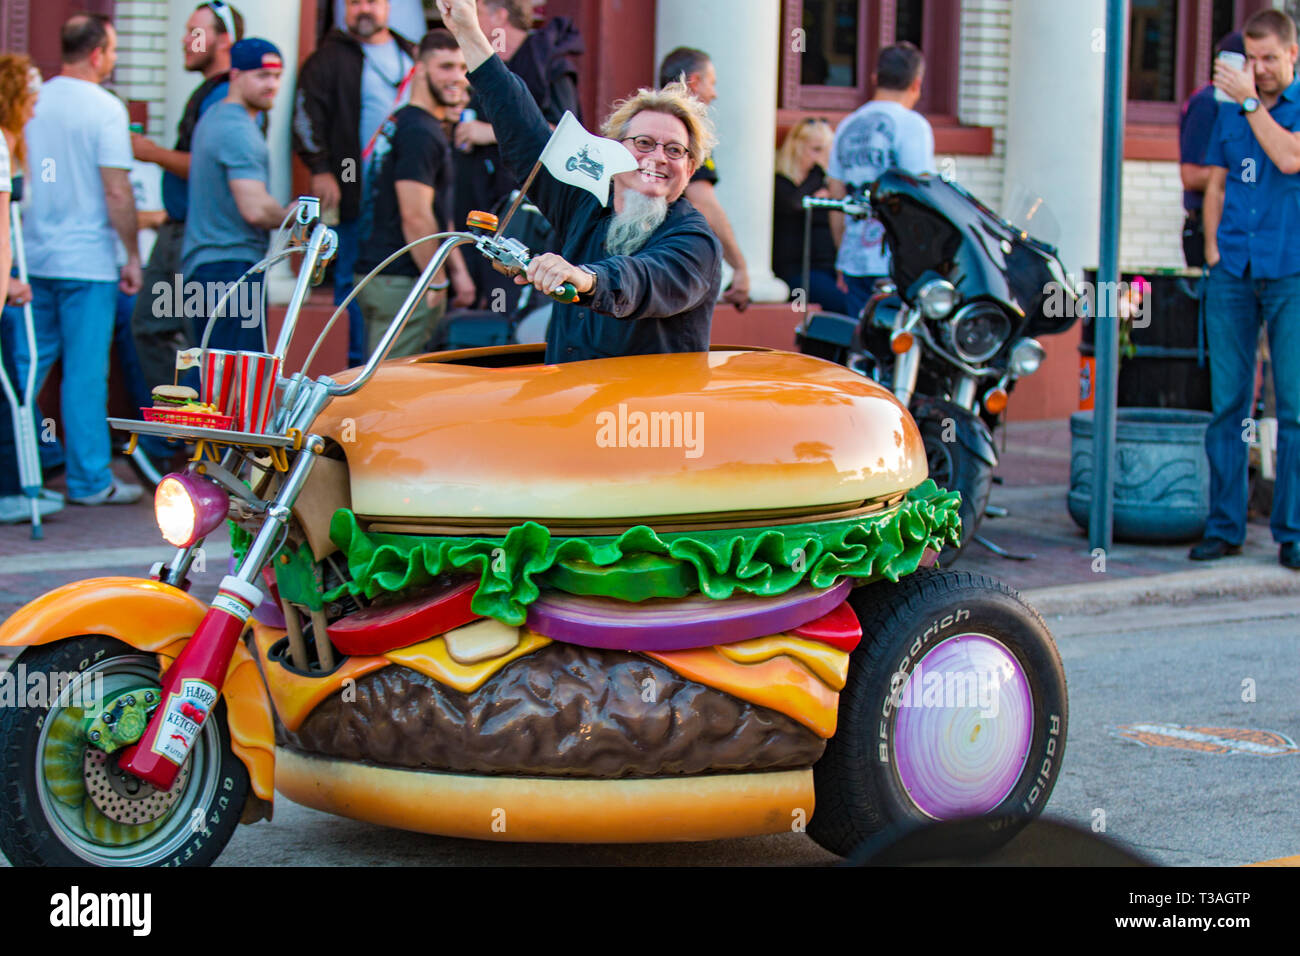 Daytona Beach, FL - 07 mars 2016 : Hamburger Harry chevauche son hamburger Harley sur la rue principale au cours de la 75e Assemblée Daytona Bike Week. Banque D'Images